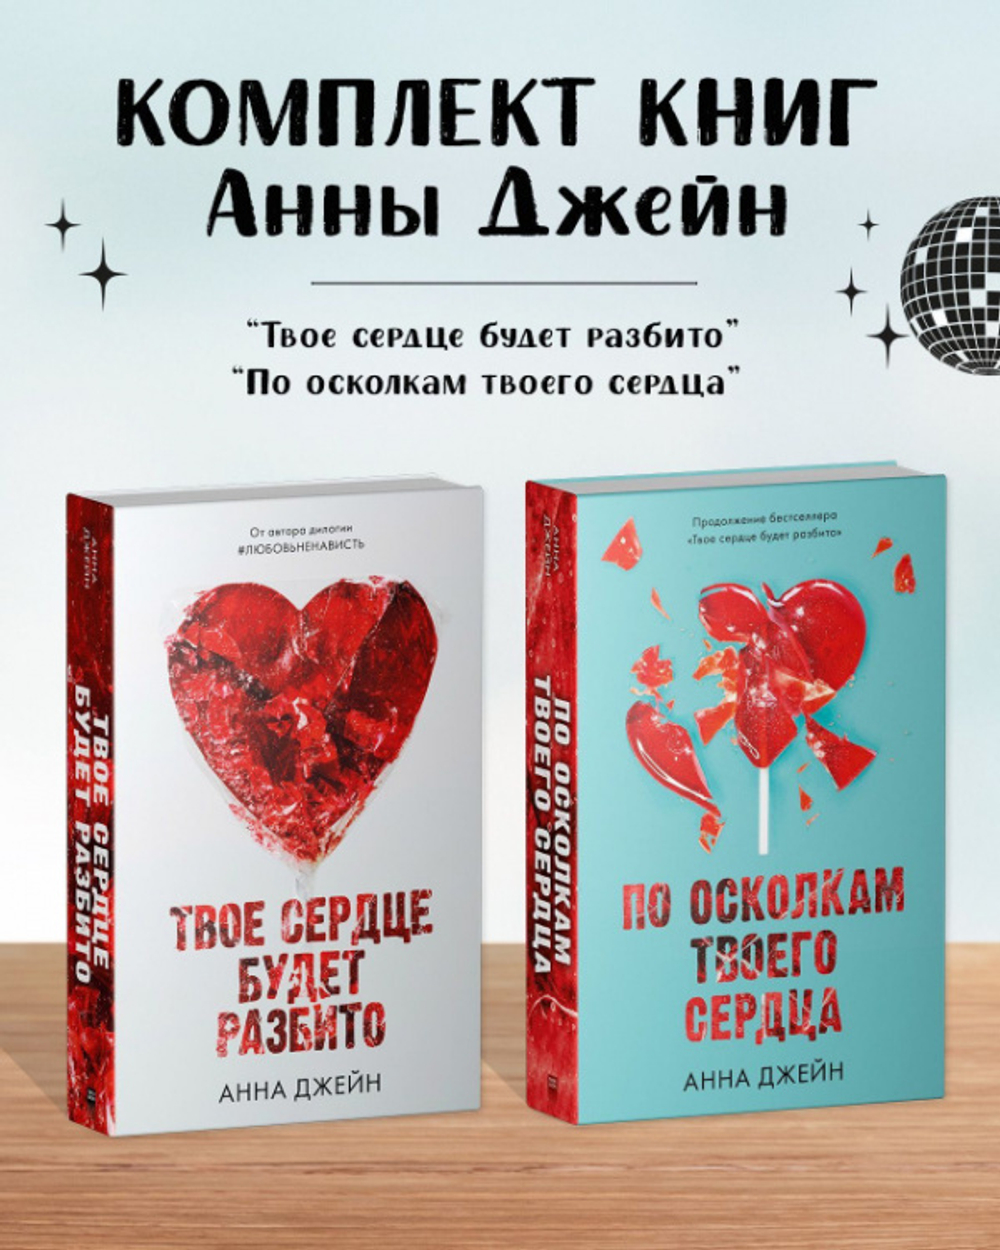 Комплект книг Анны Джейн «По осколкам твоего сердца», «Твое сердце будет разбито»